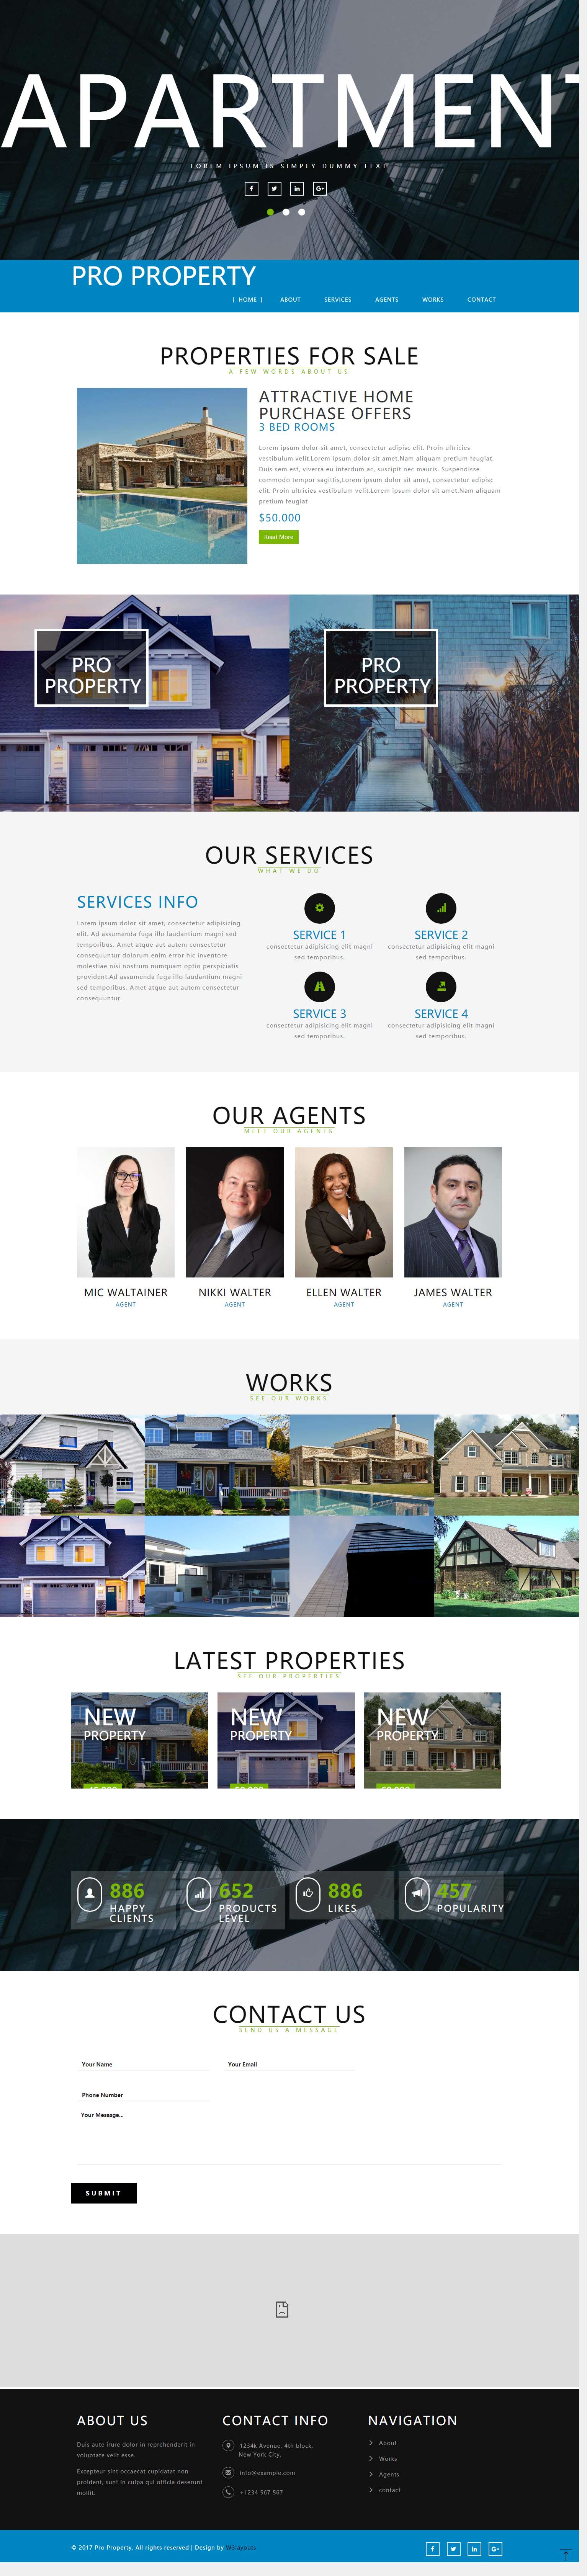 蓝色简洁风格的房产交易整站网站源码下载